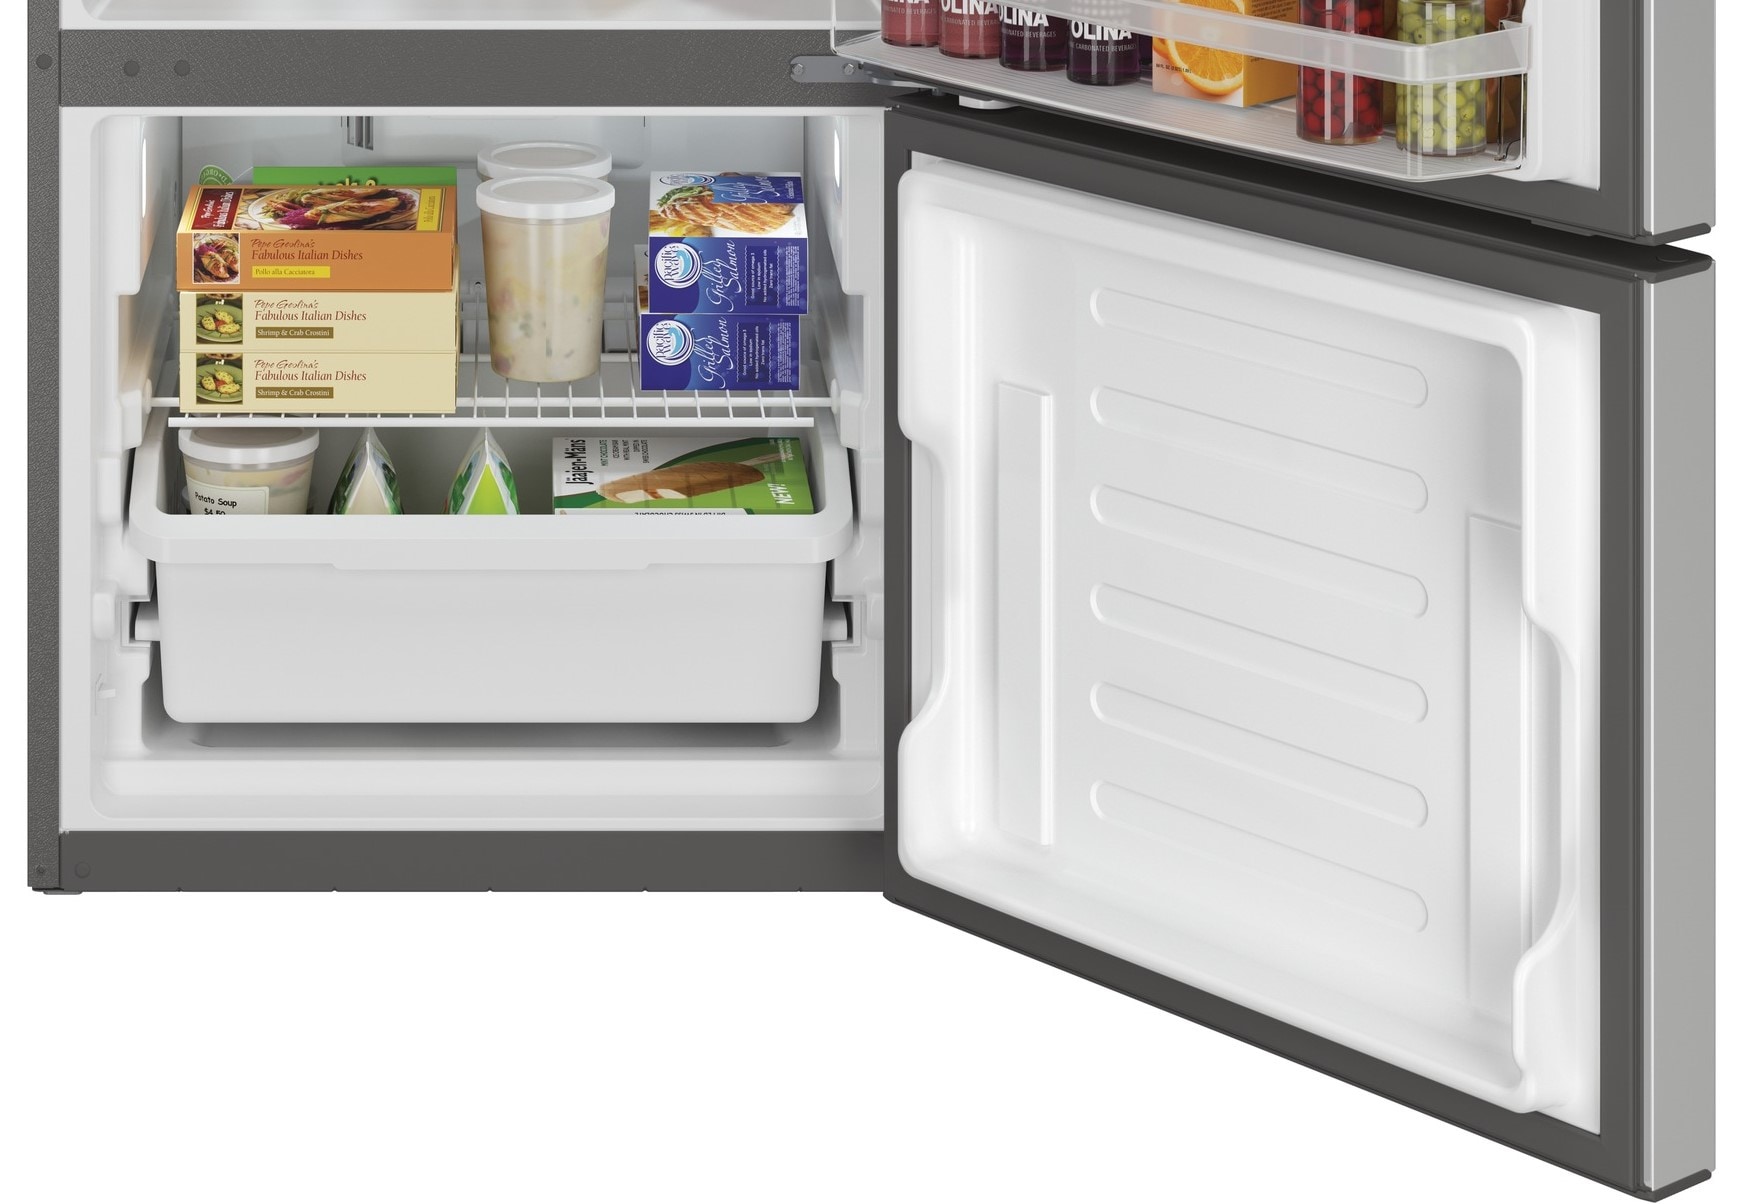 GBE21DYKFS 30 20.9 Cu. Ft. Bottom Freezer Refrigerator with